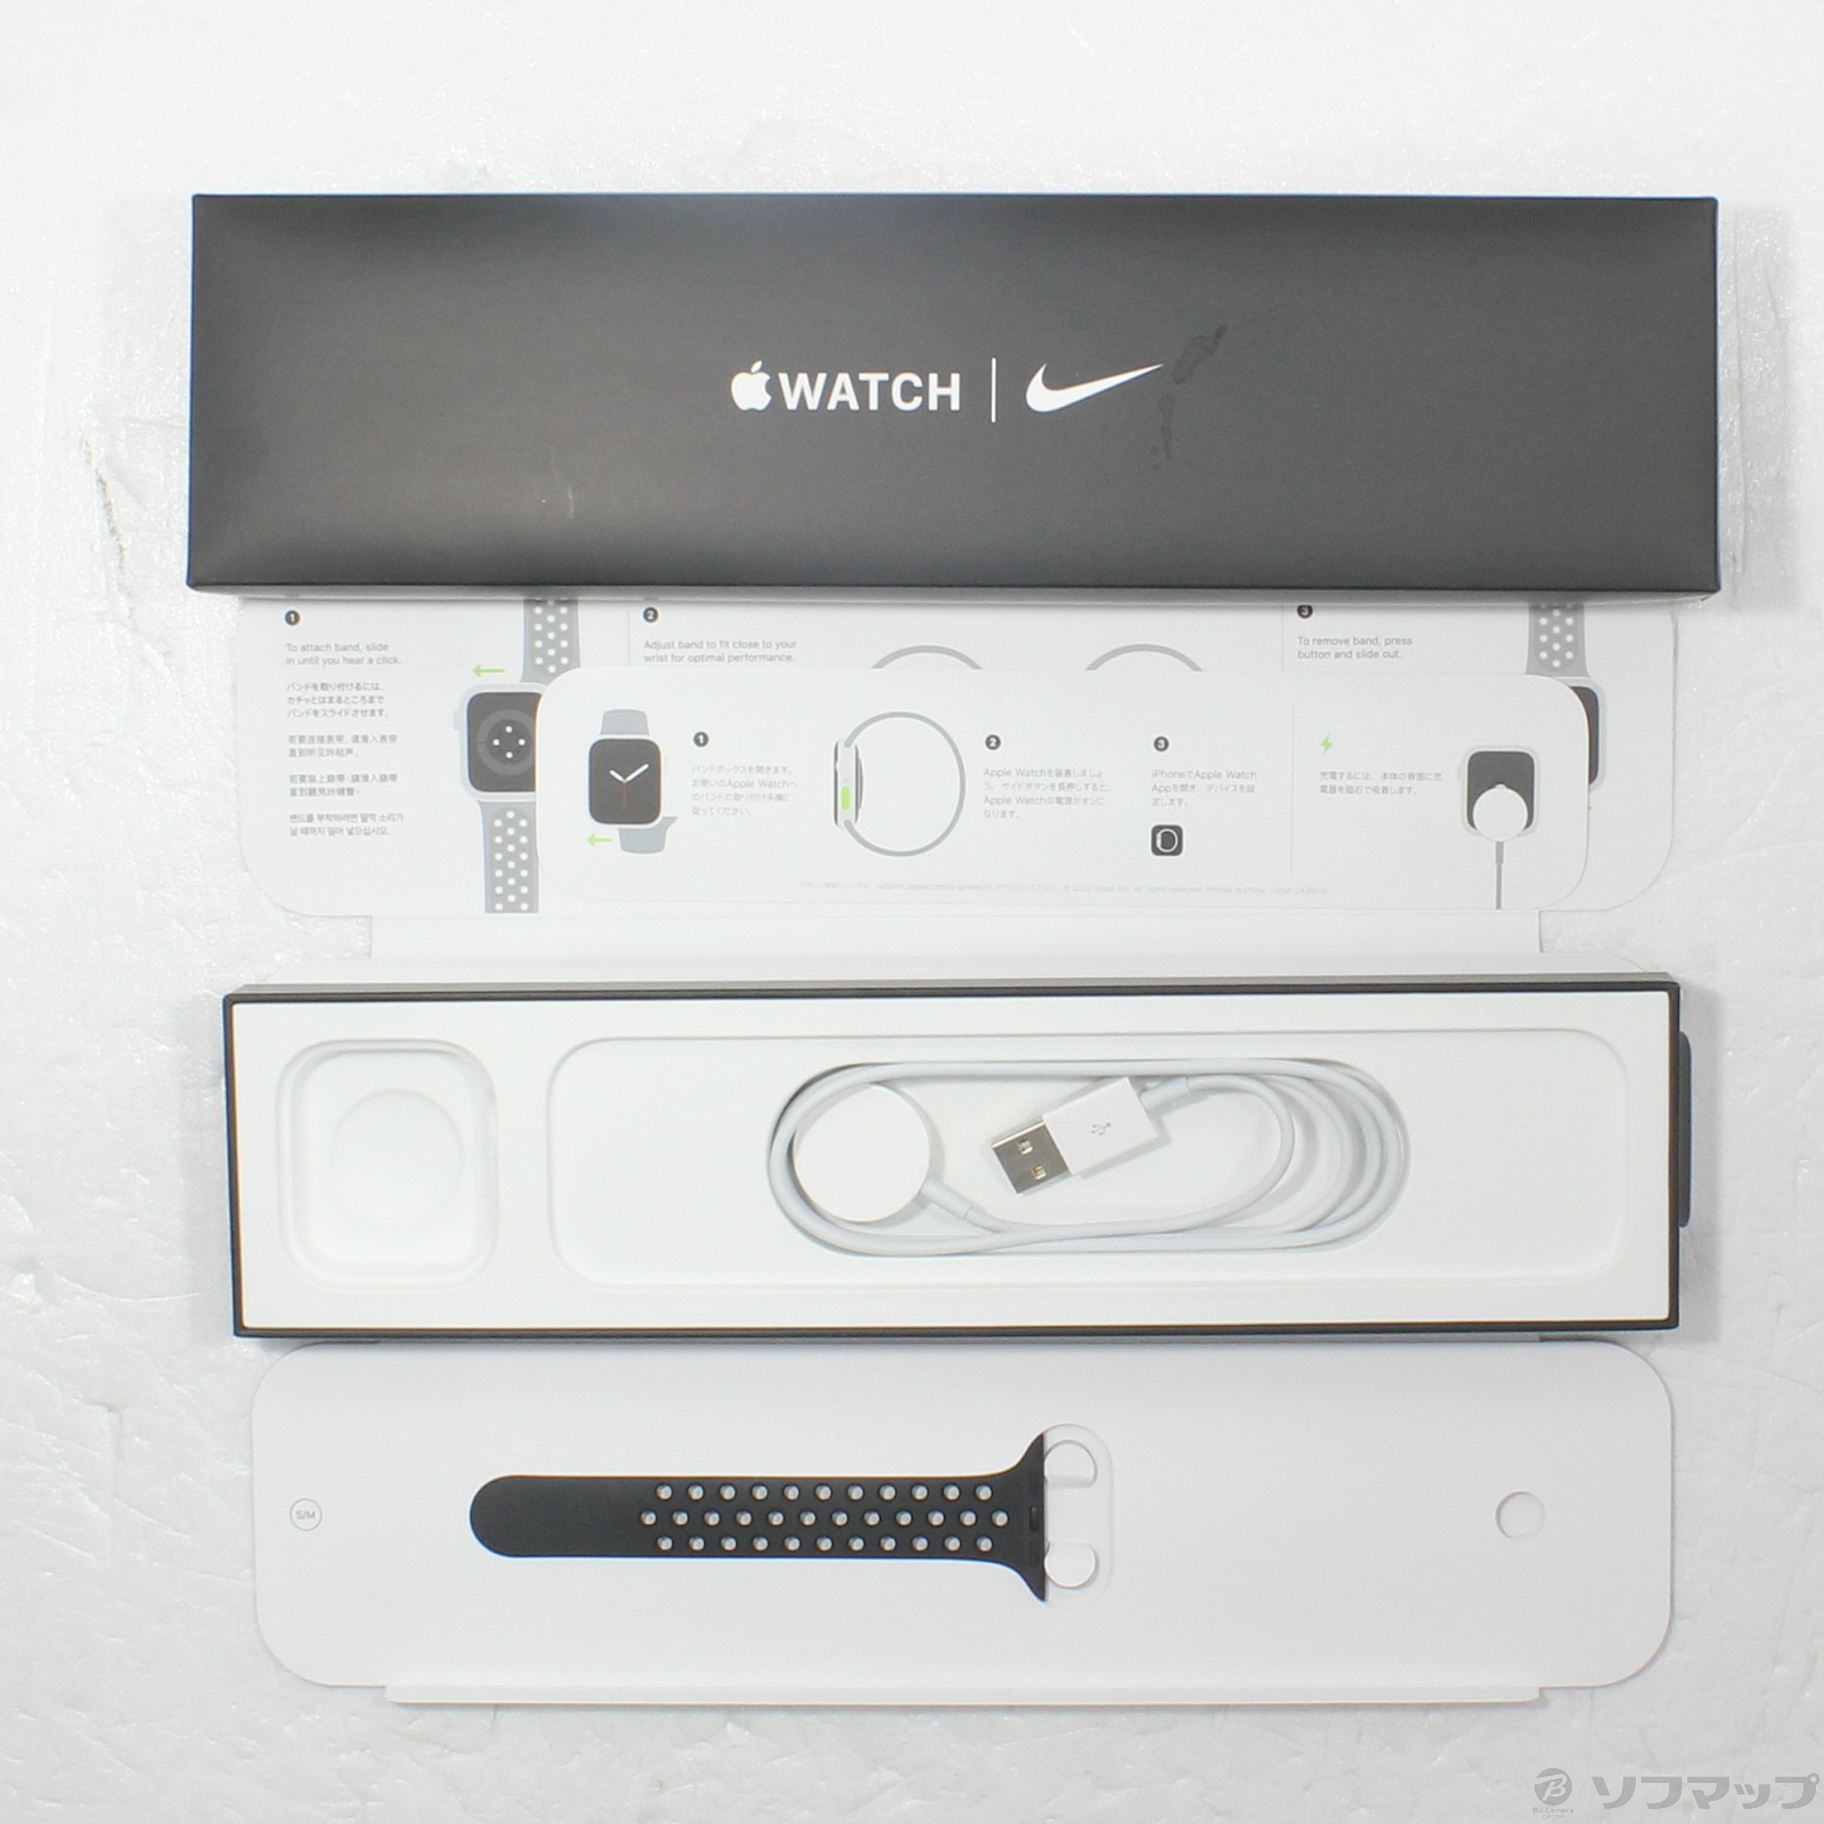 Apple Watch Nike+ Series 4 GPSモデル

未使用